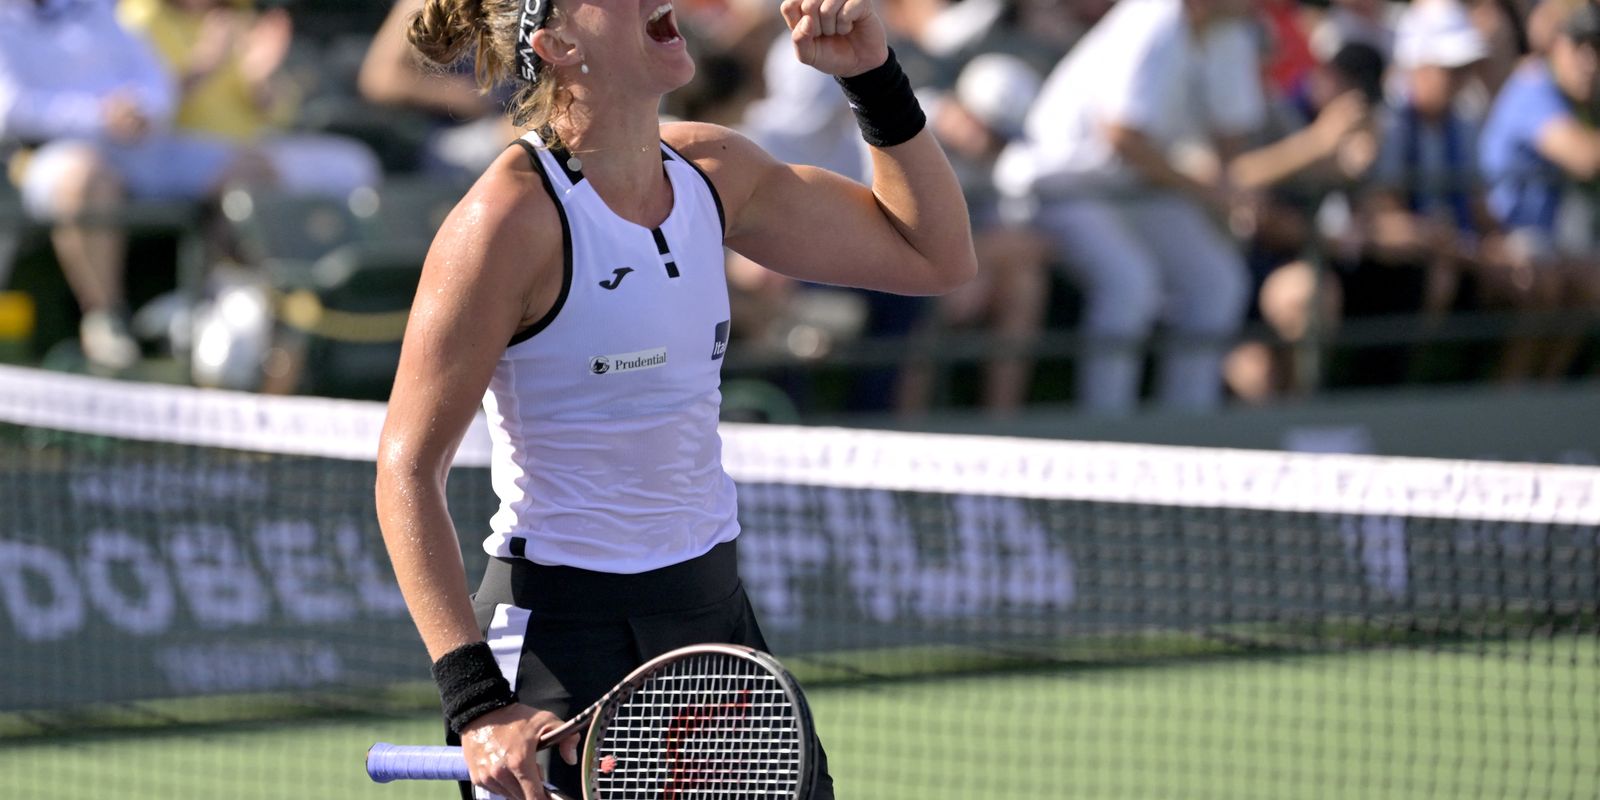 ATP e WTA de Miami 2023 de tênis: confira chaves, programação e